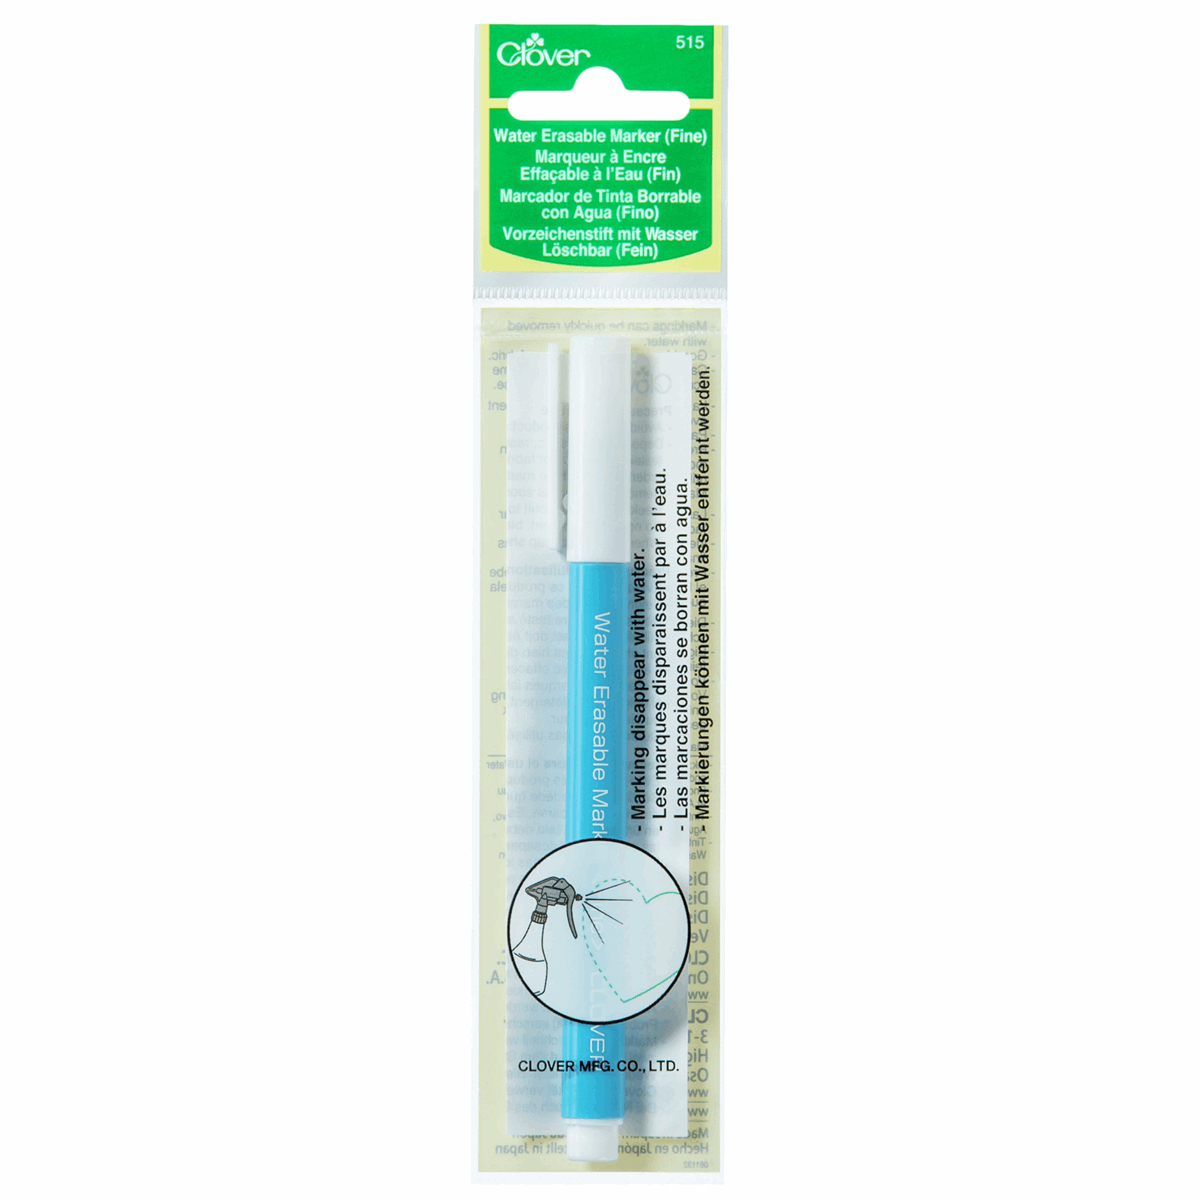 Water Soluble Fine Fabric Marker Pen